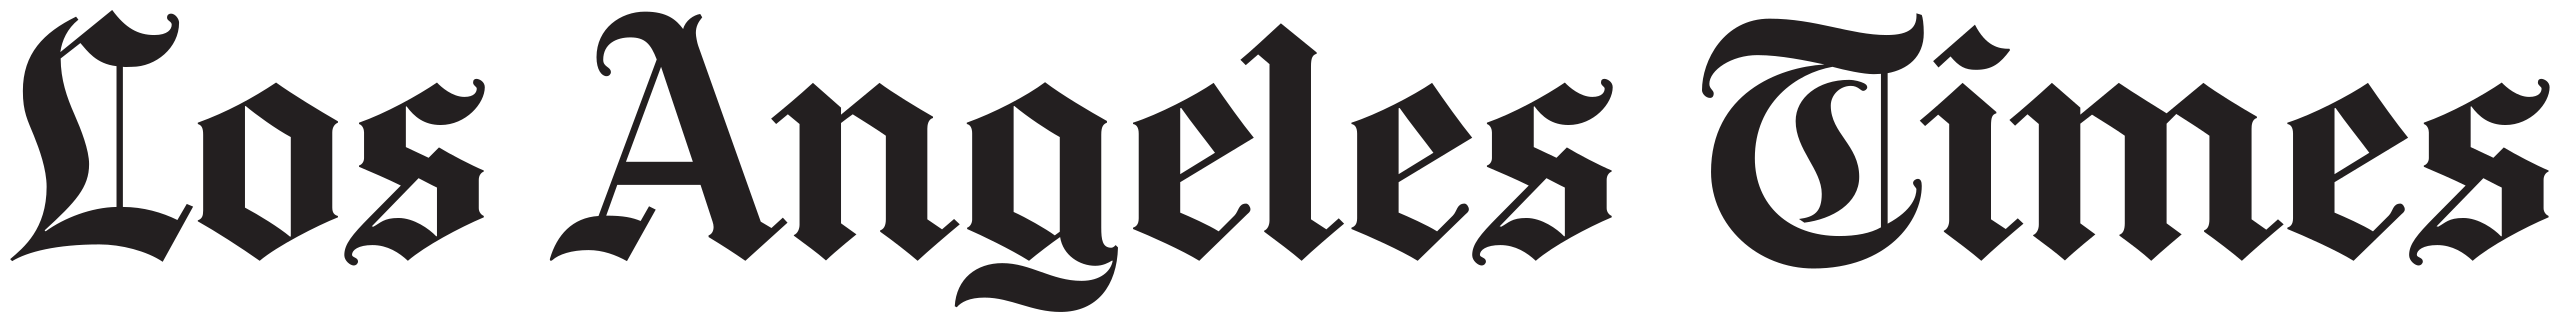 Logotipo de Los Angeles Times